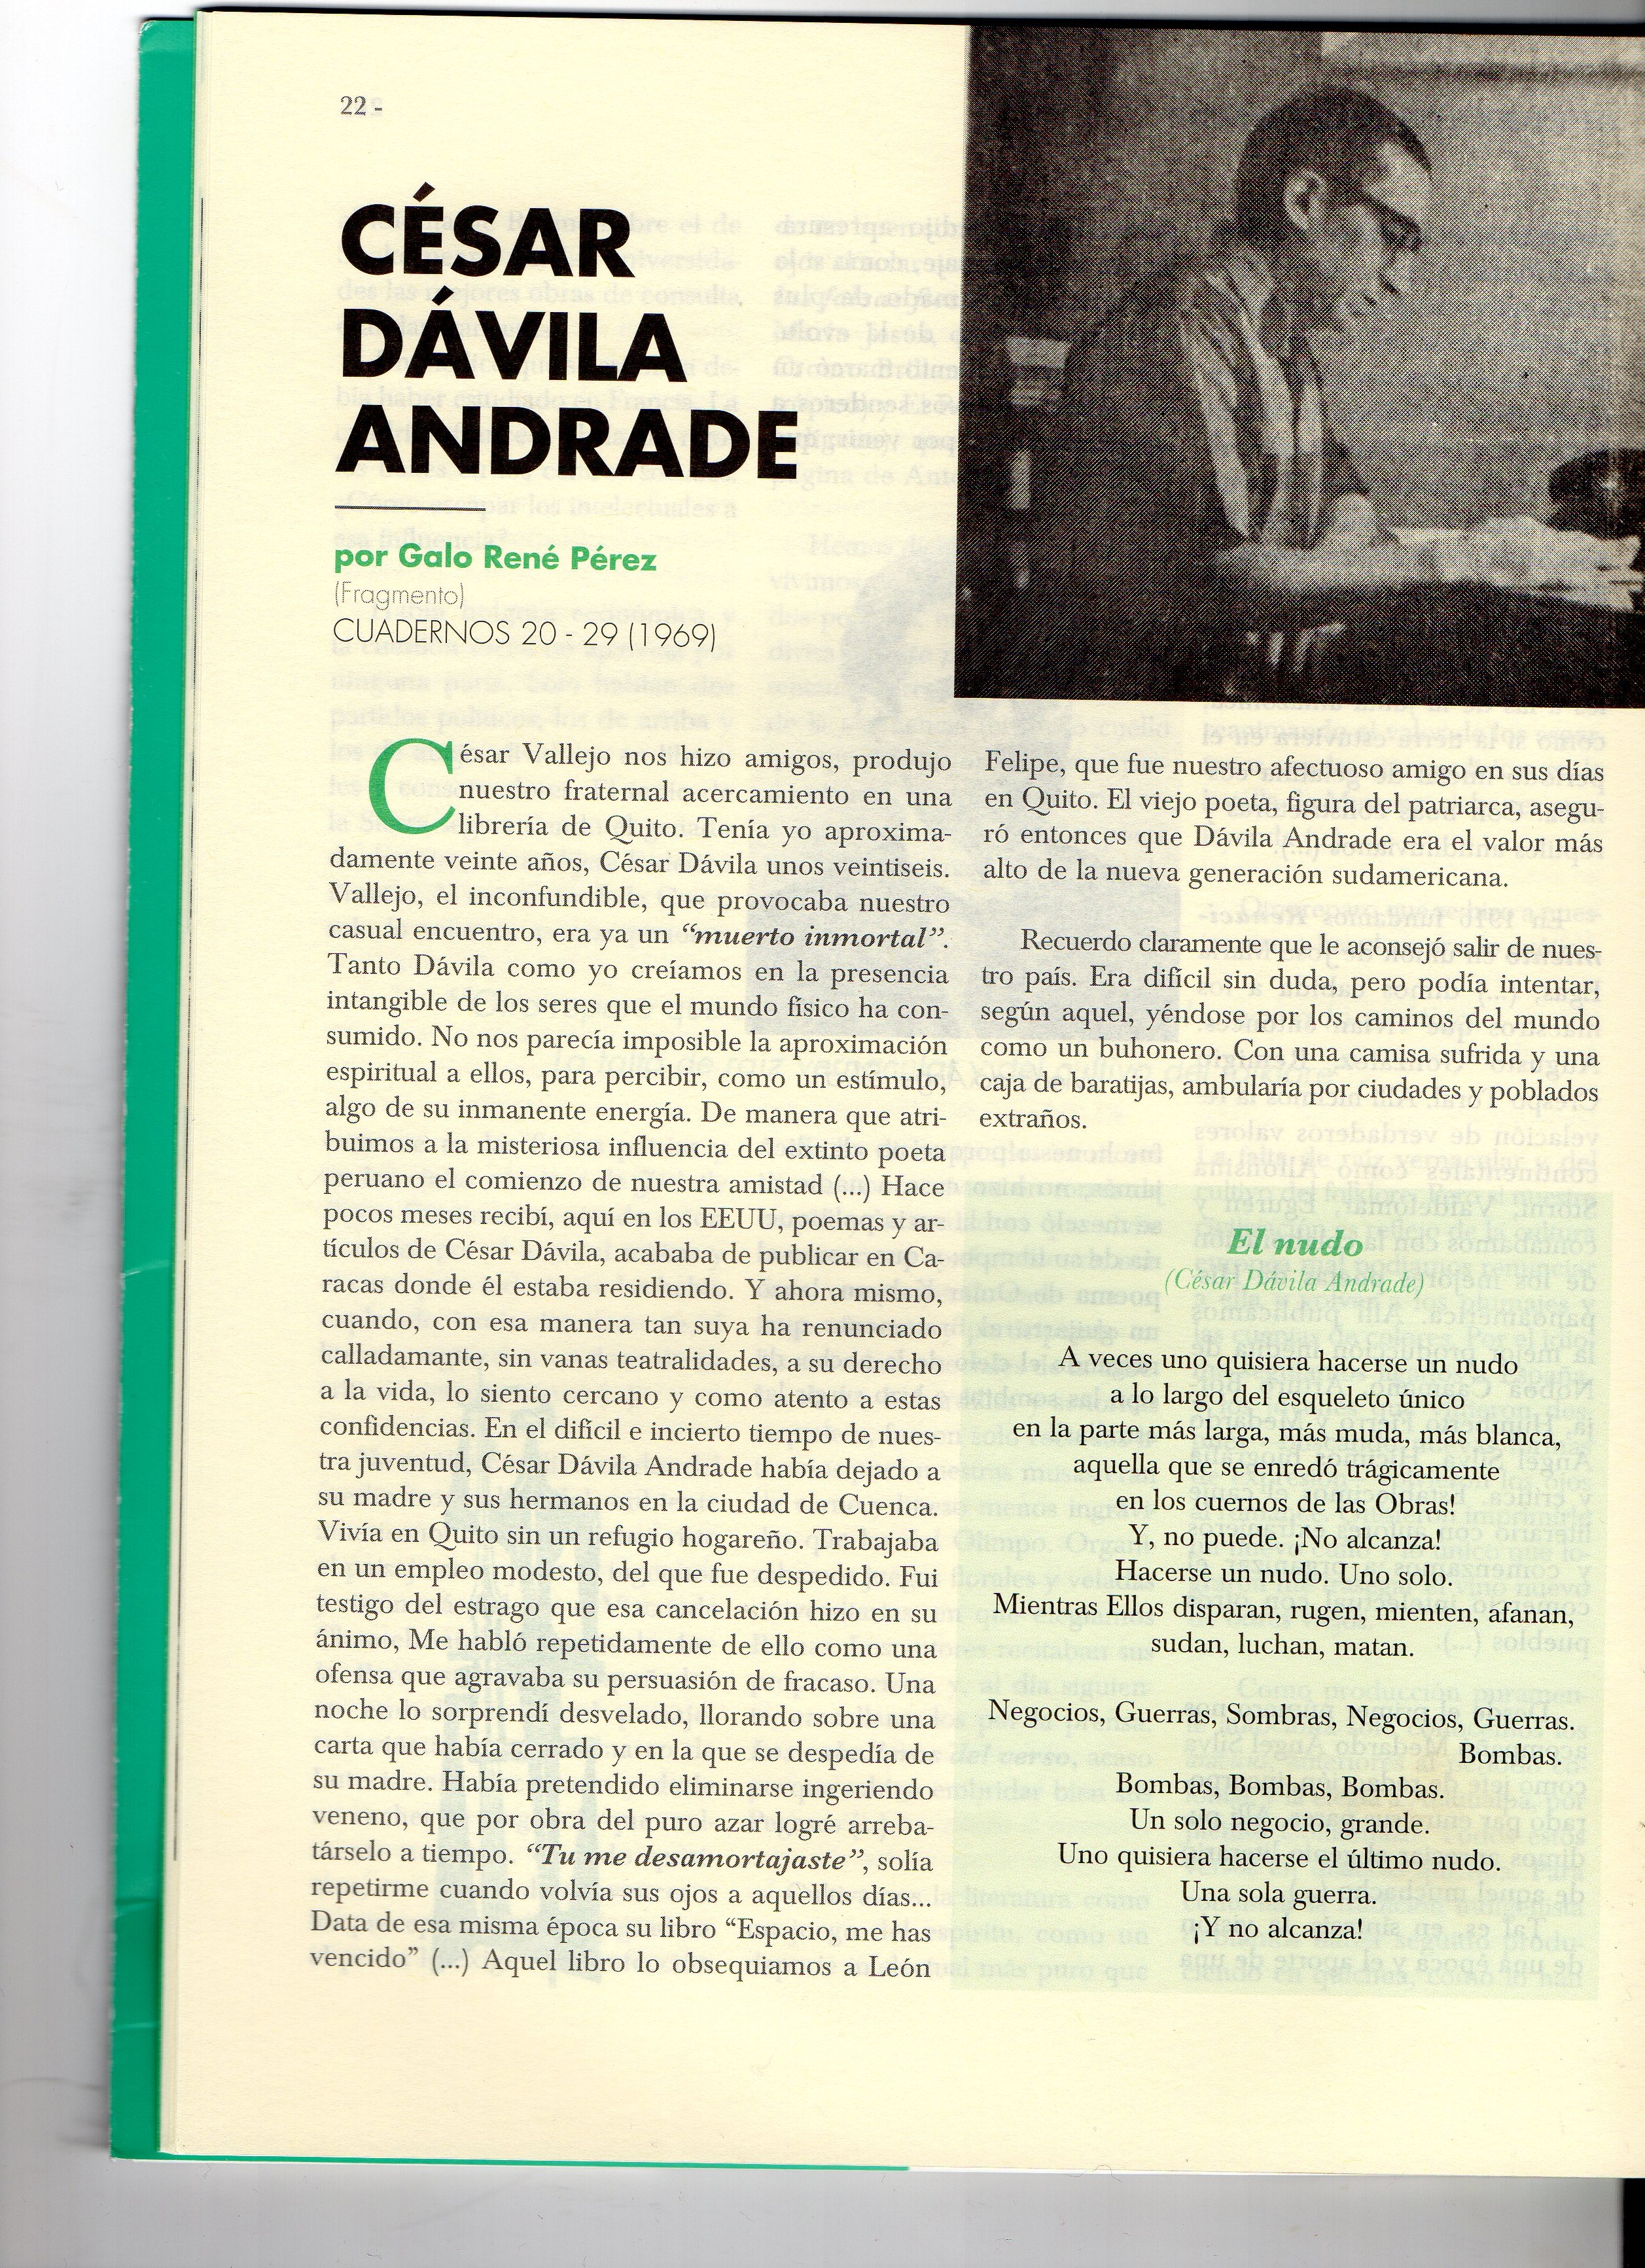 Texto de Galo René Pérez, 1969 («Memorias de Cuadernos del Guayas, 1948-1971»)